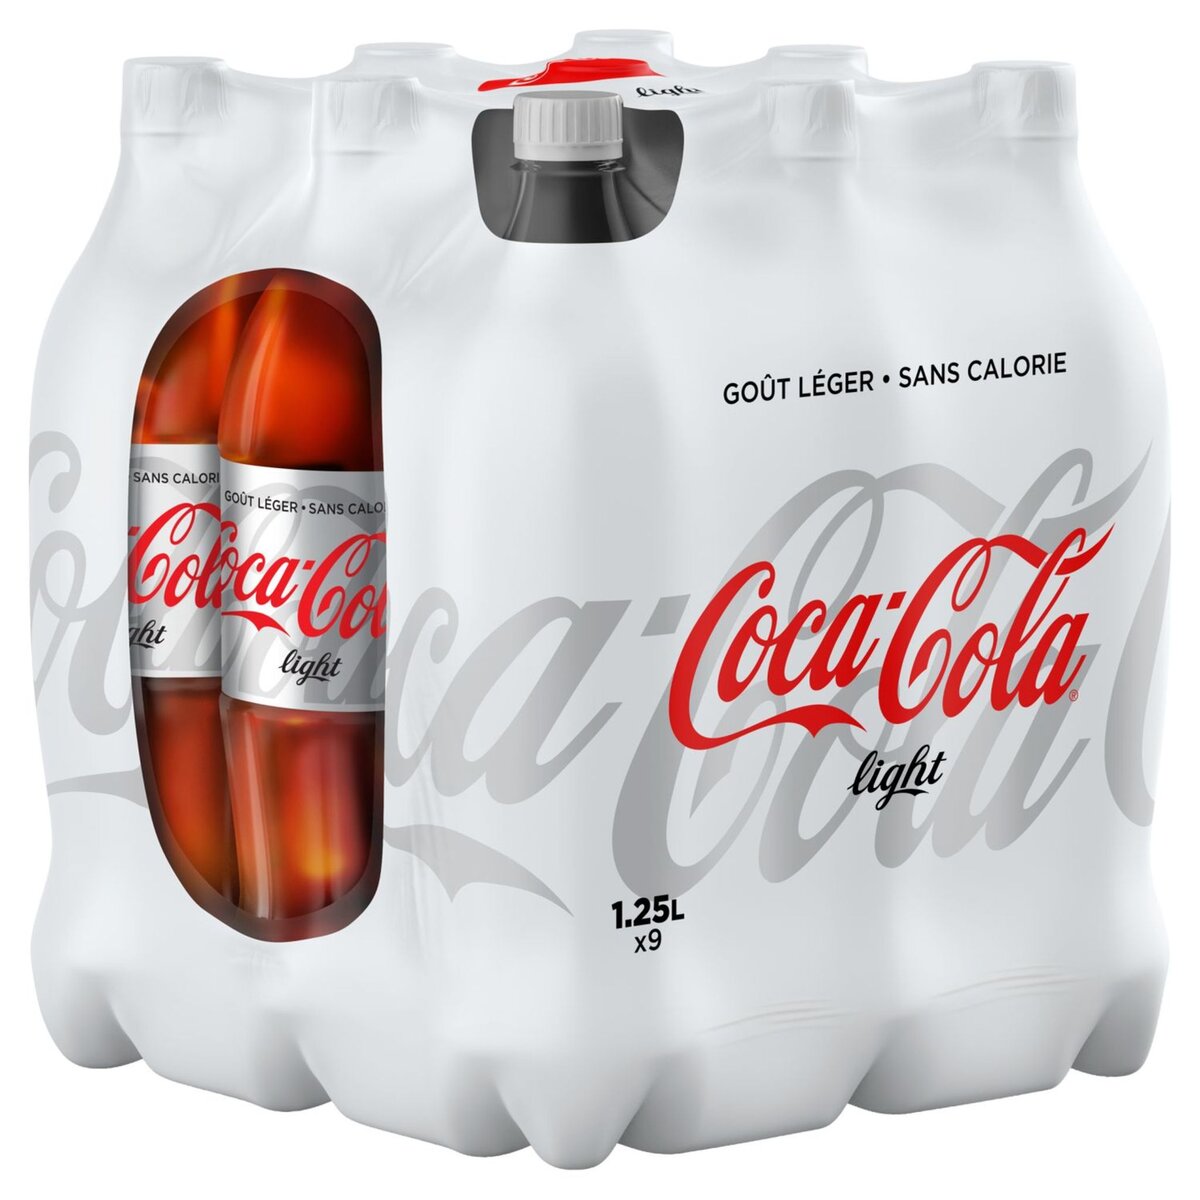 COCA-COLA Coca-Cola light 9x1,25l